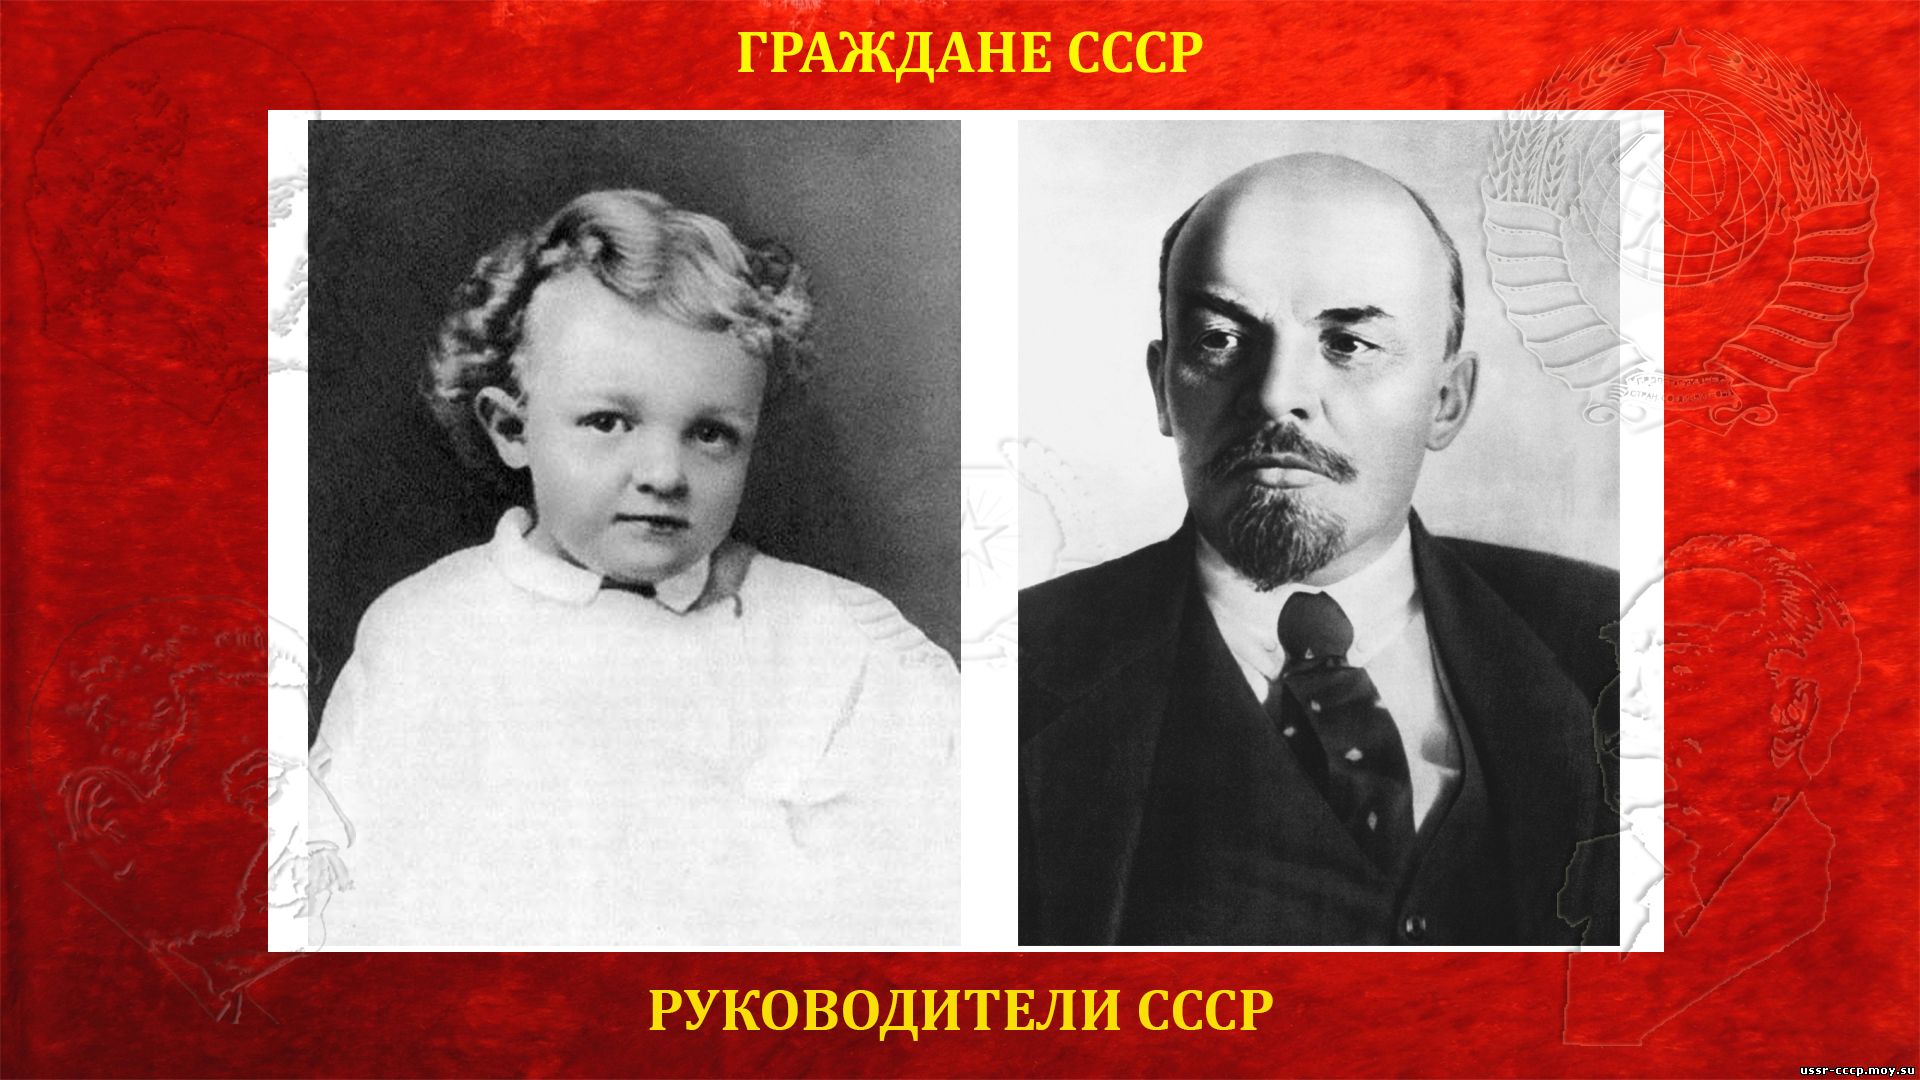 Ленин (Ульянов) Владимир Ильич — Вождь и руководитель СССР (22.04.1870 — 21.01.1924) (биография)